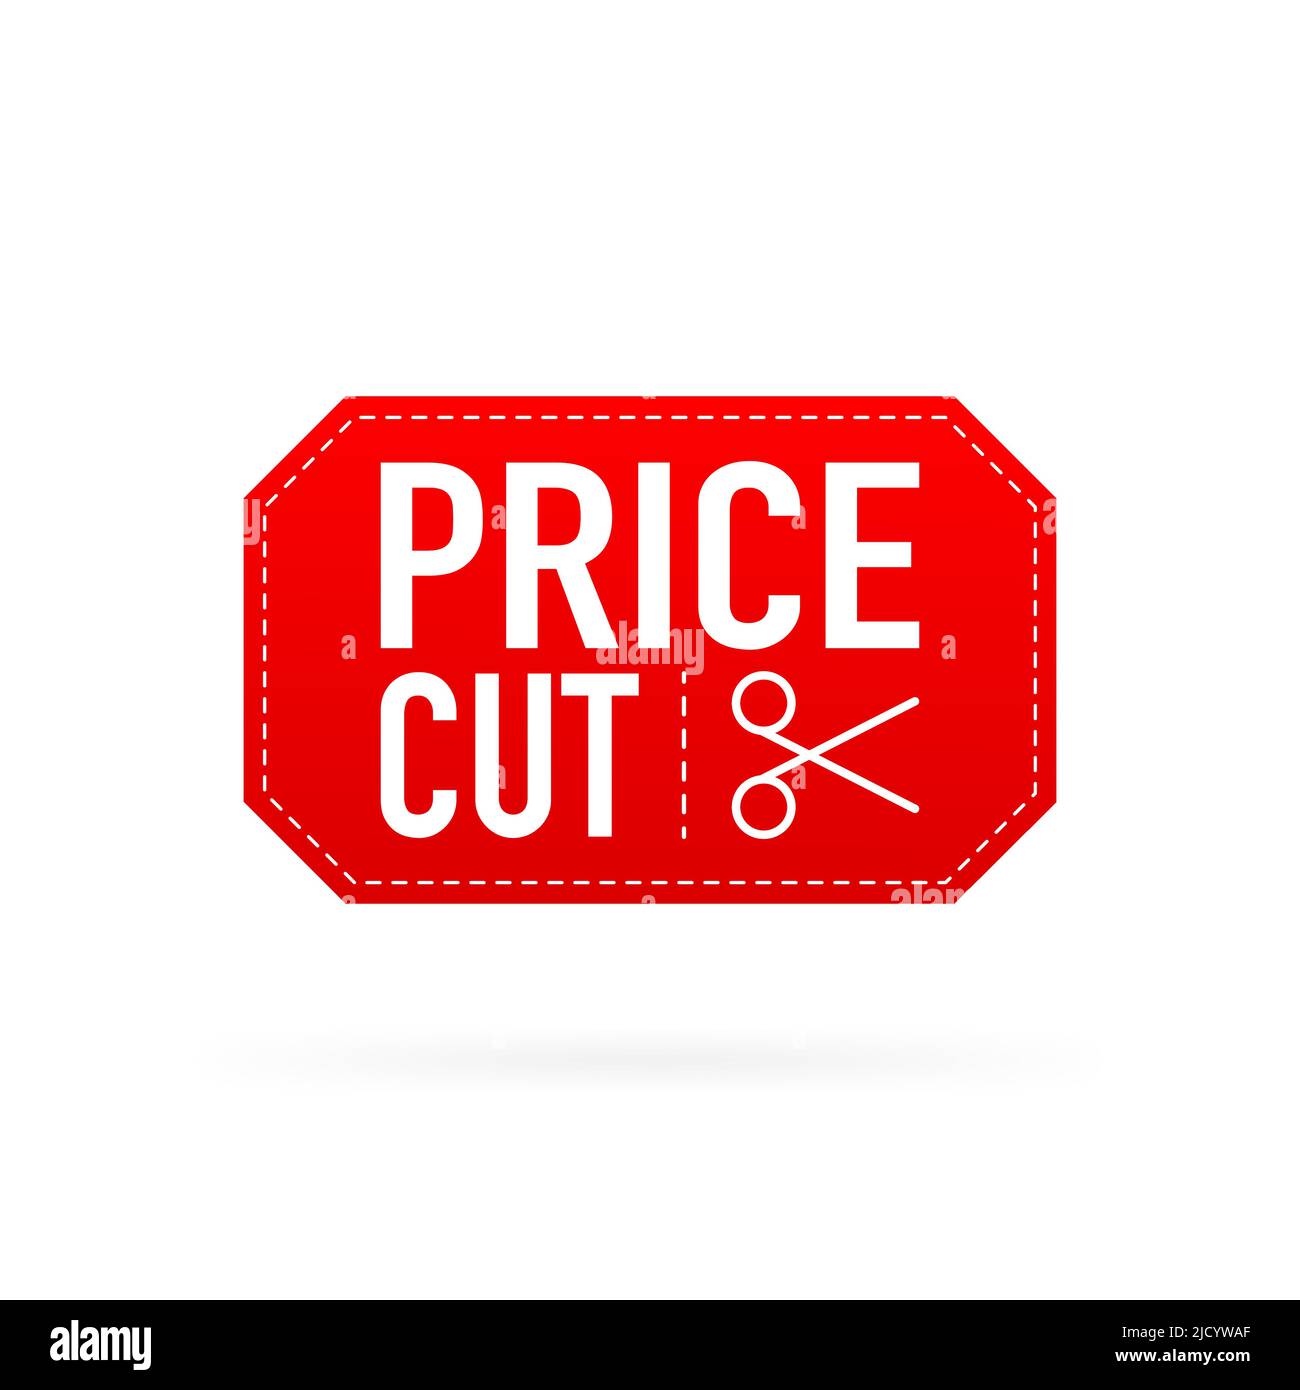 Grande sconto. Etichette di taglio dei prezzi. Illustrazione vettoriale. Illustrazione Vettoriale